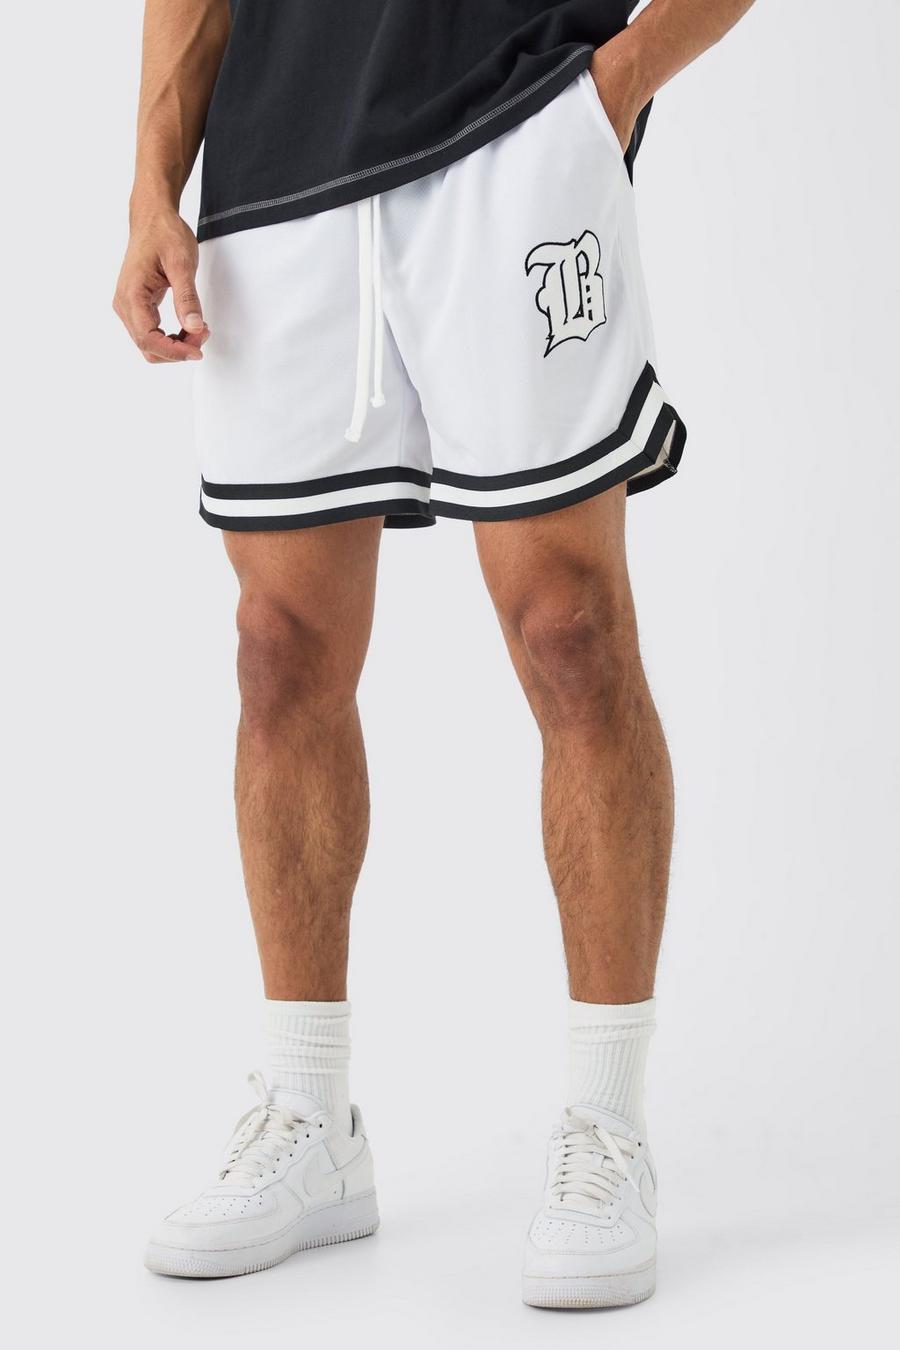 Pantalón corto holgado de malla estilo baloncesto, White